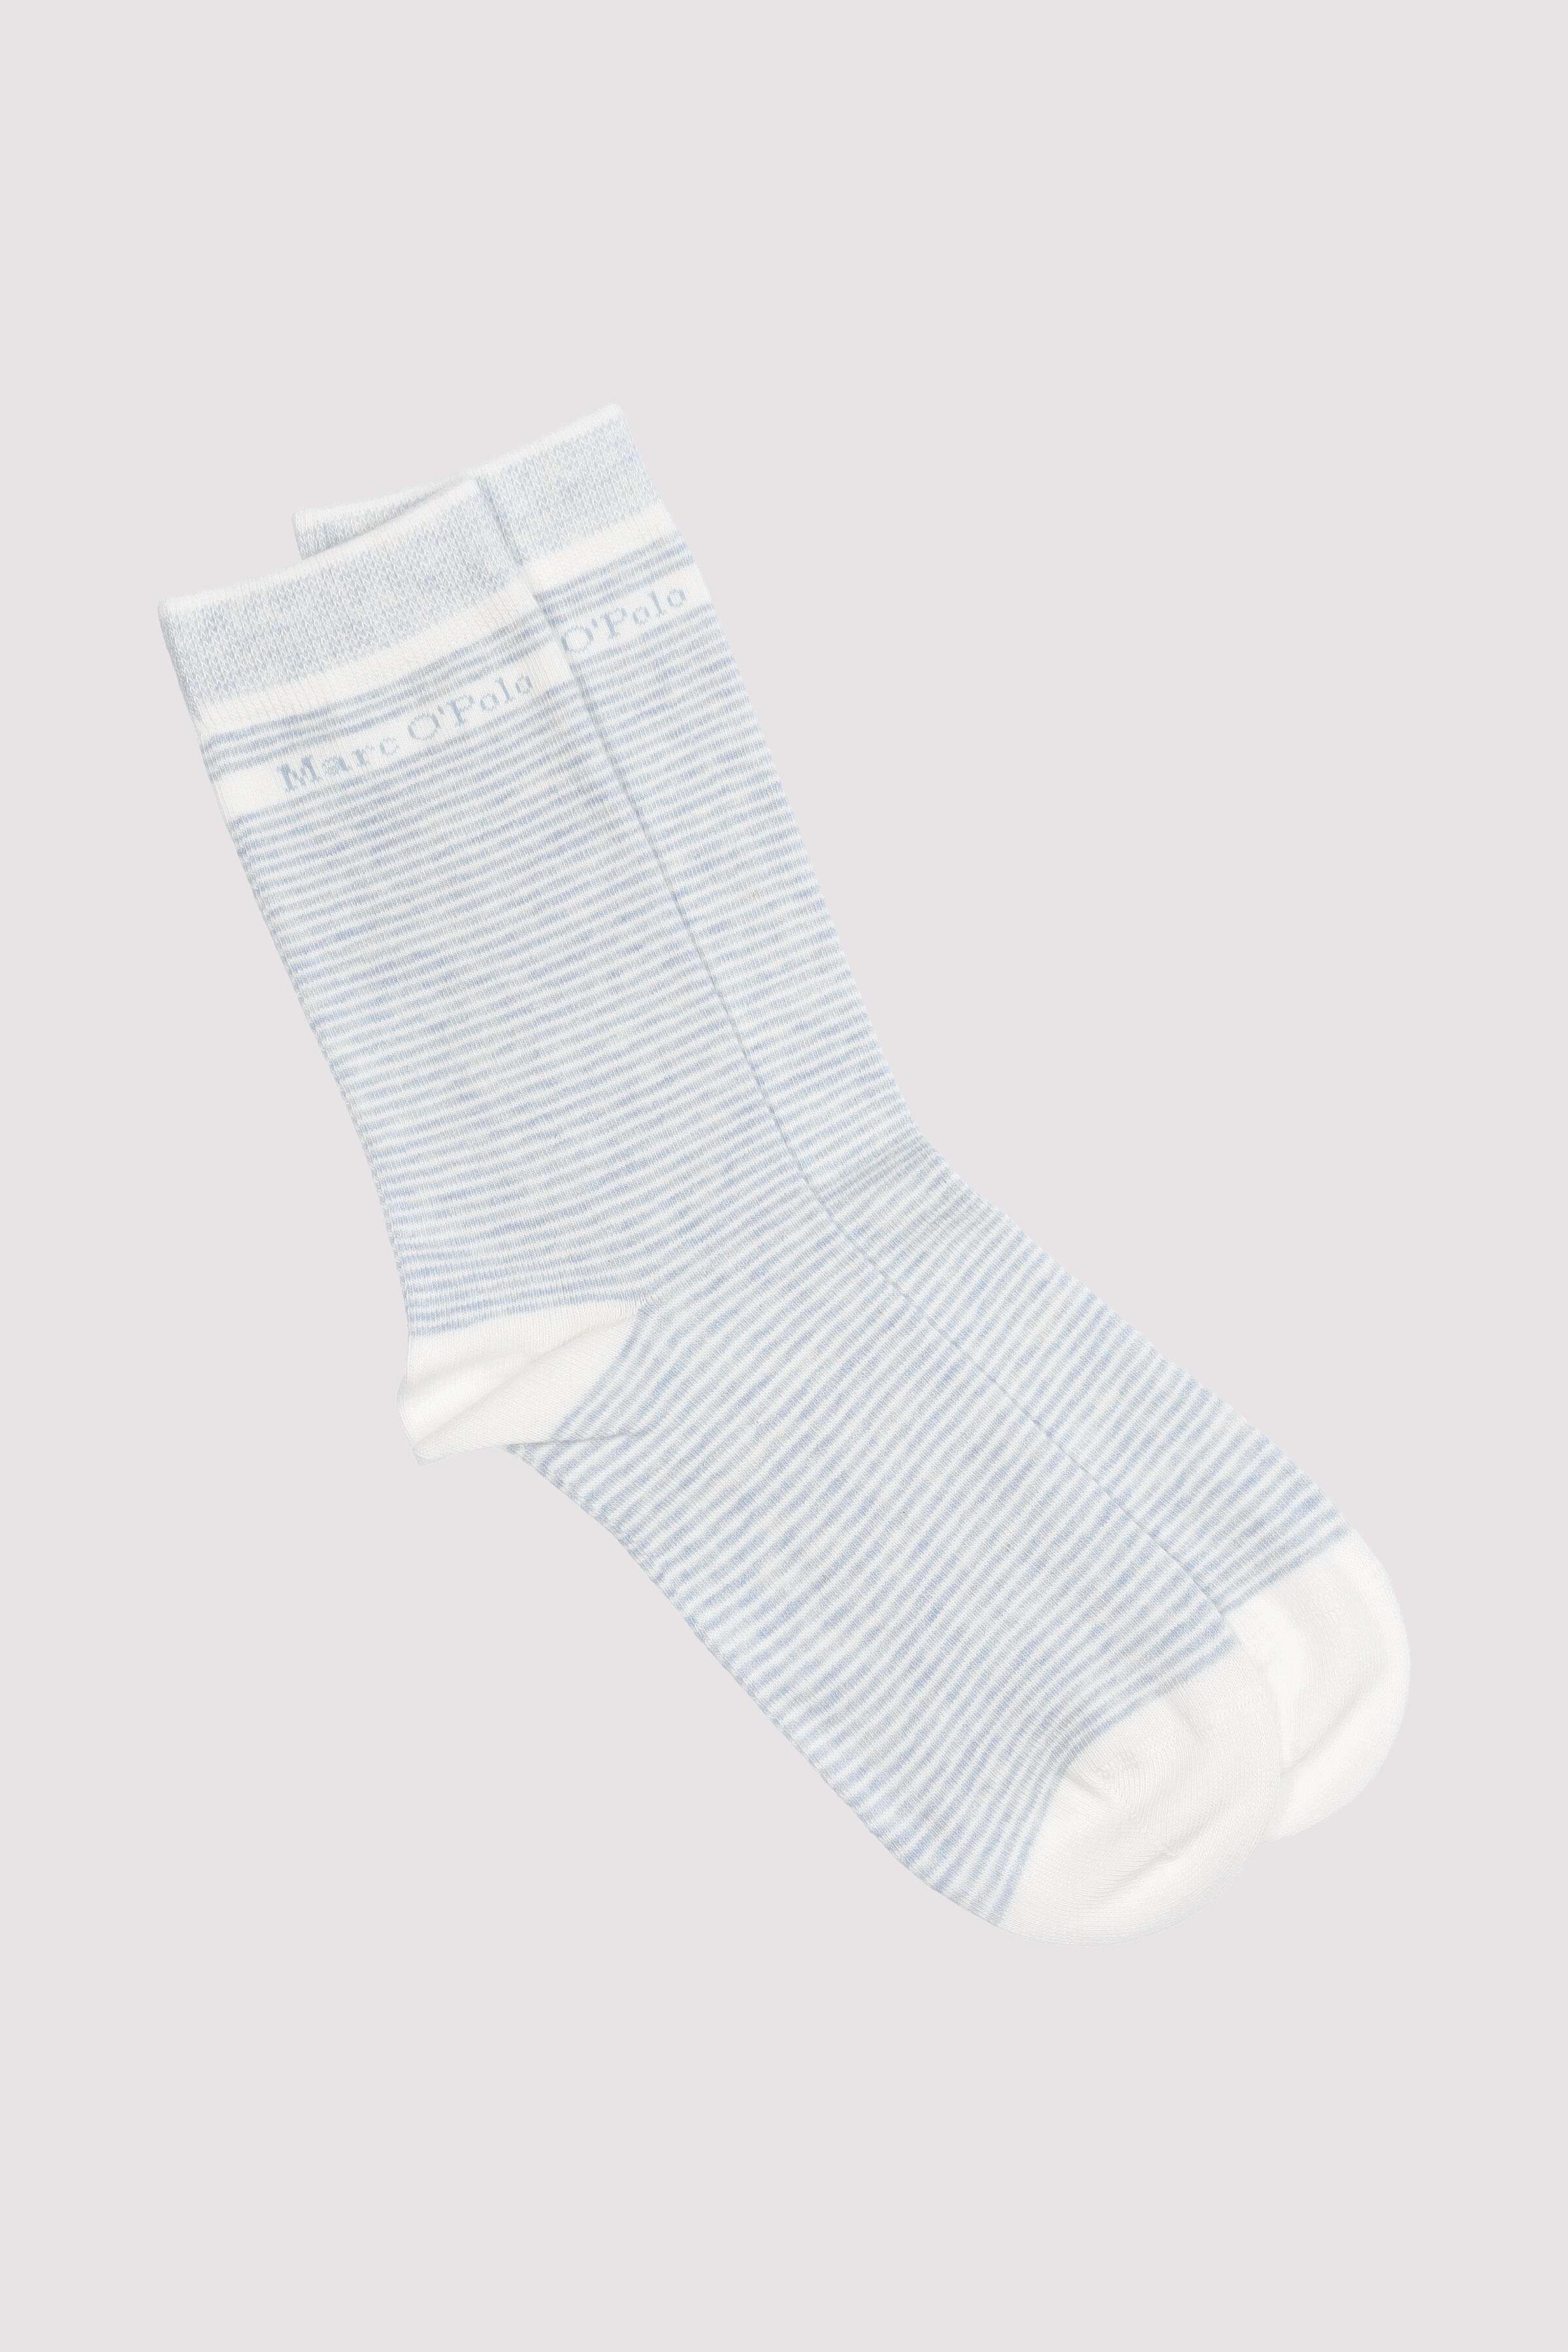 Regular Socks, Striped, mix, 2